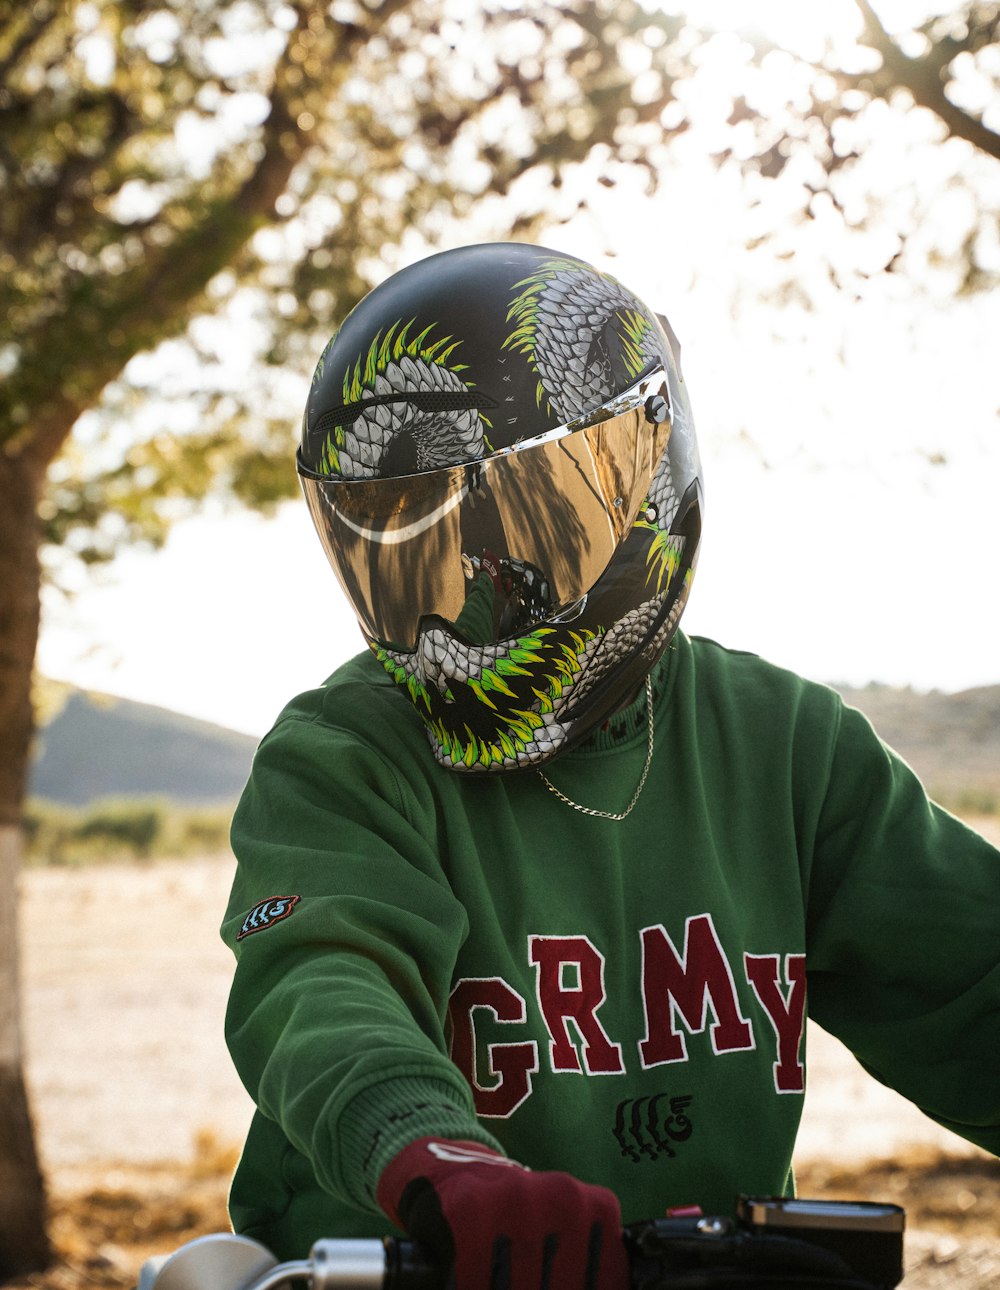 오토바이 헬멧을 쓴 녹색 셔츠를 입은 사람